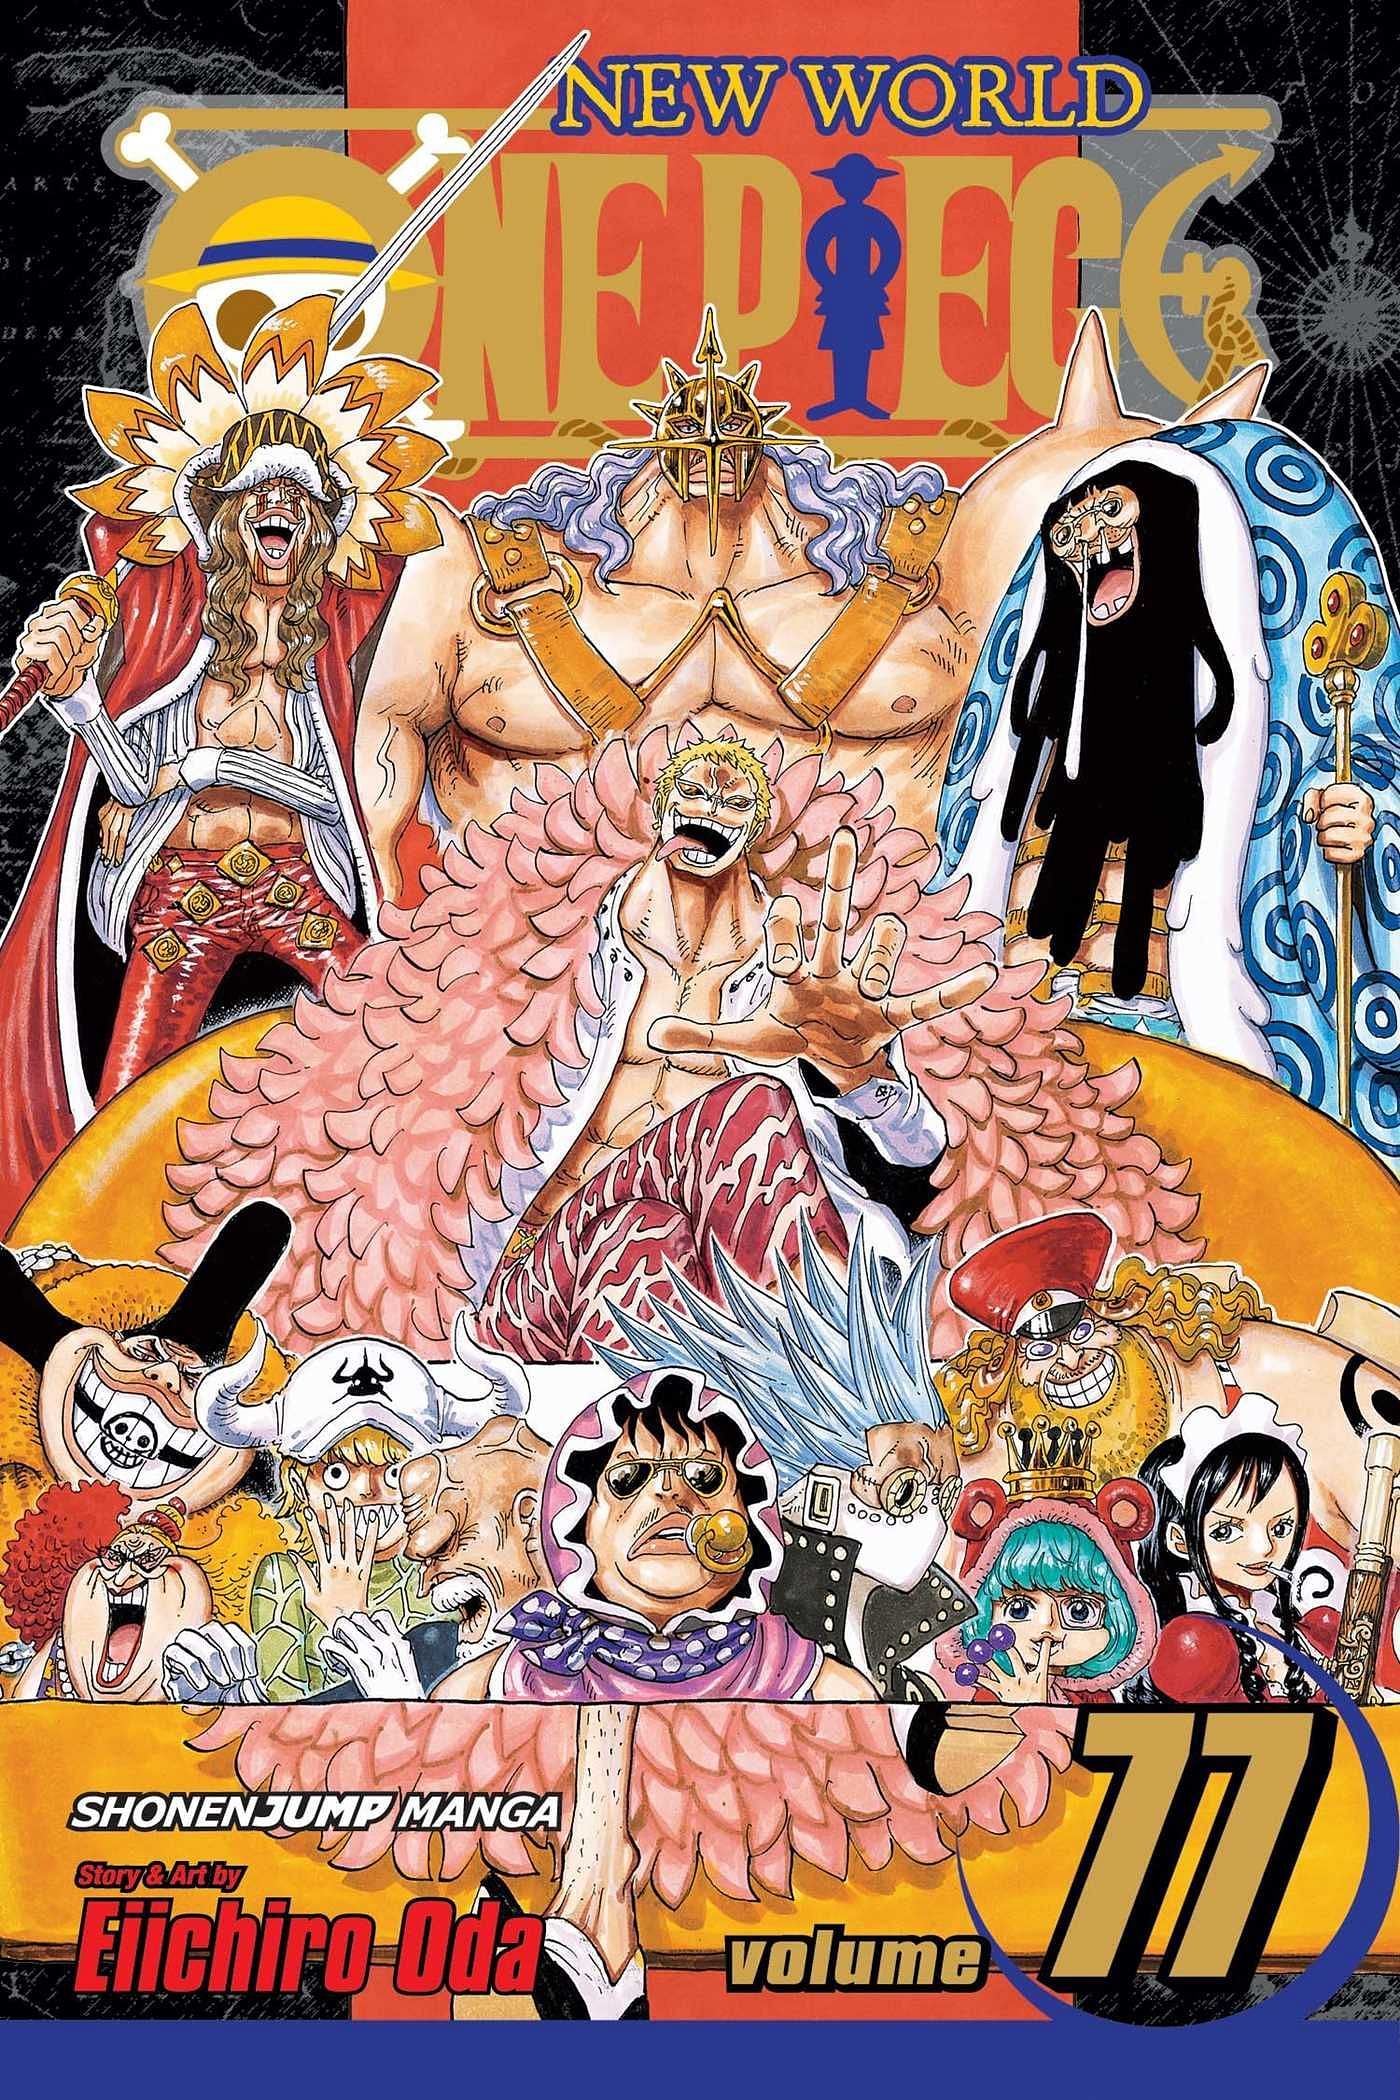 The cover art for One Piece Volume 77 (Image via Shueisha)